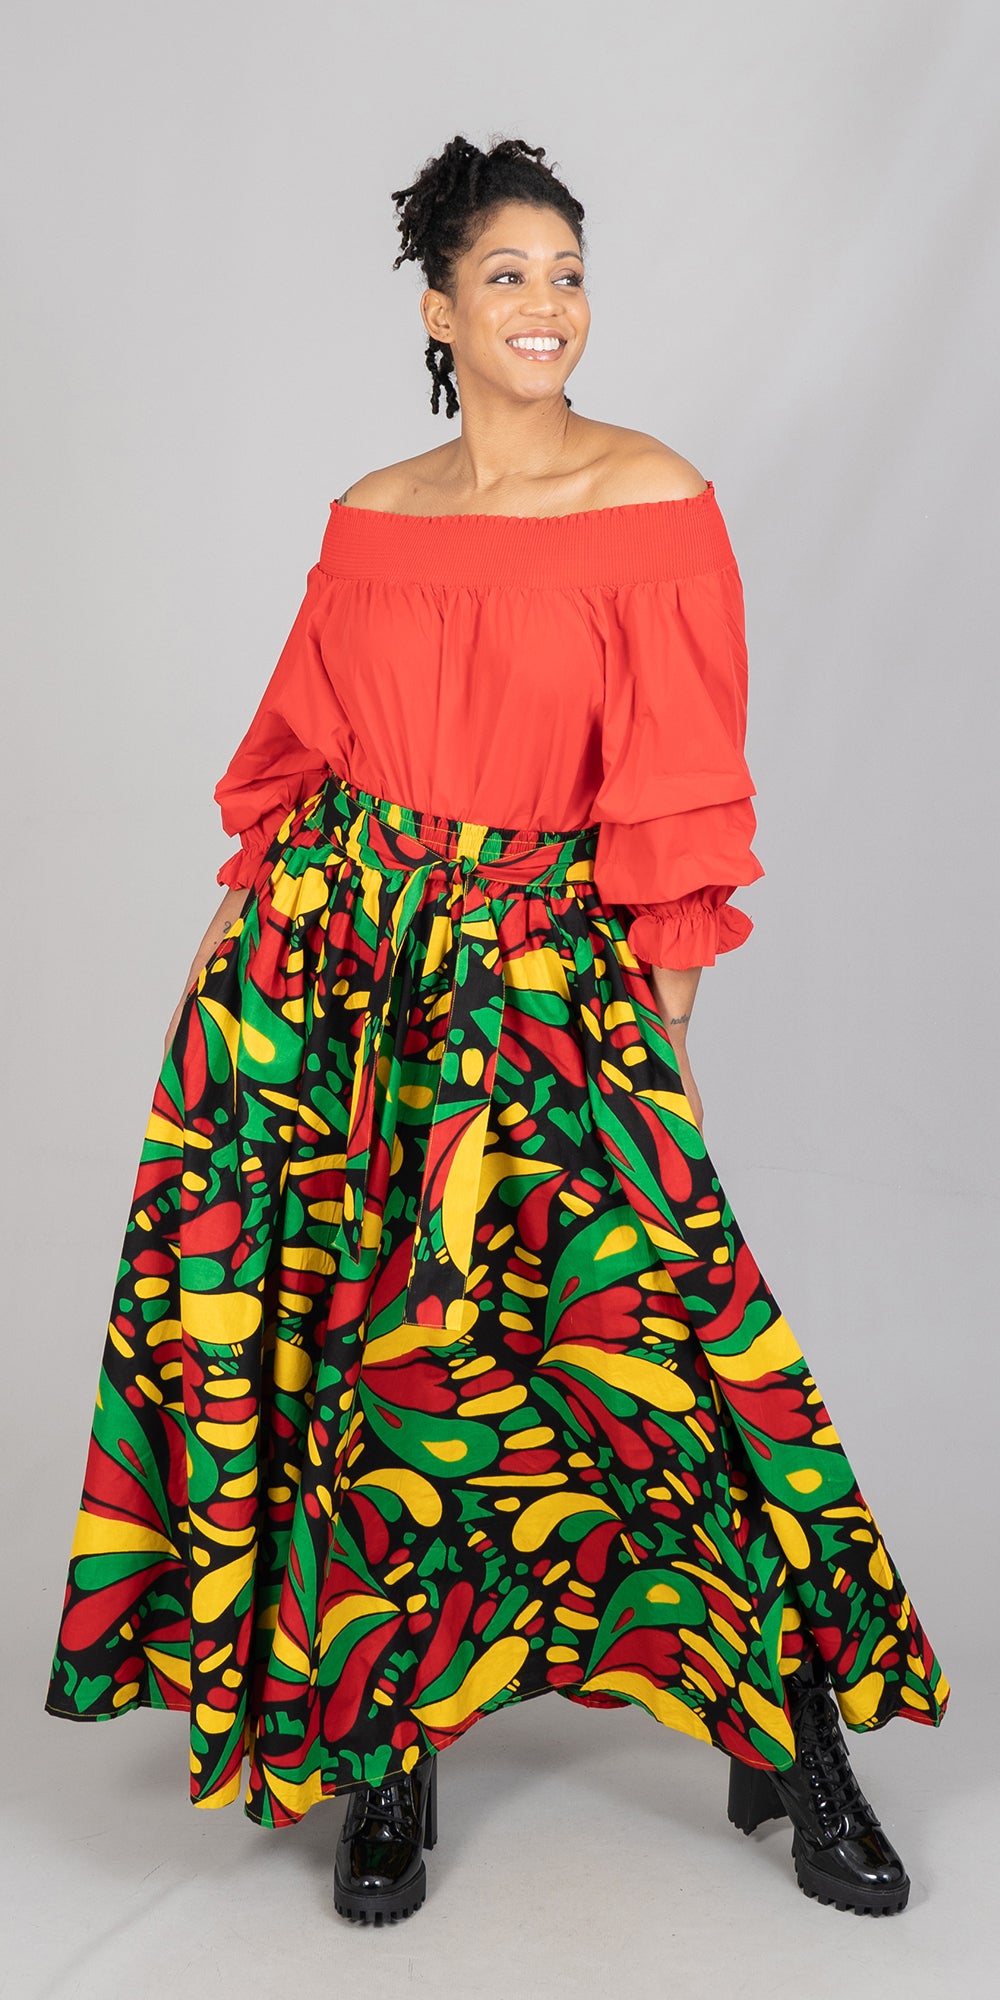 KaraChic 7001-614 Elastic Waist African Print Maxi Skirt